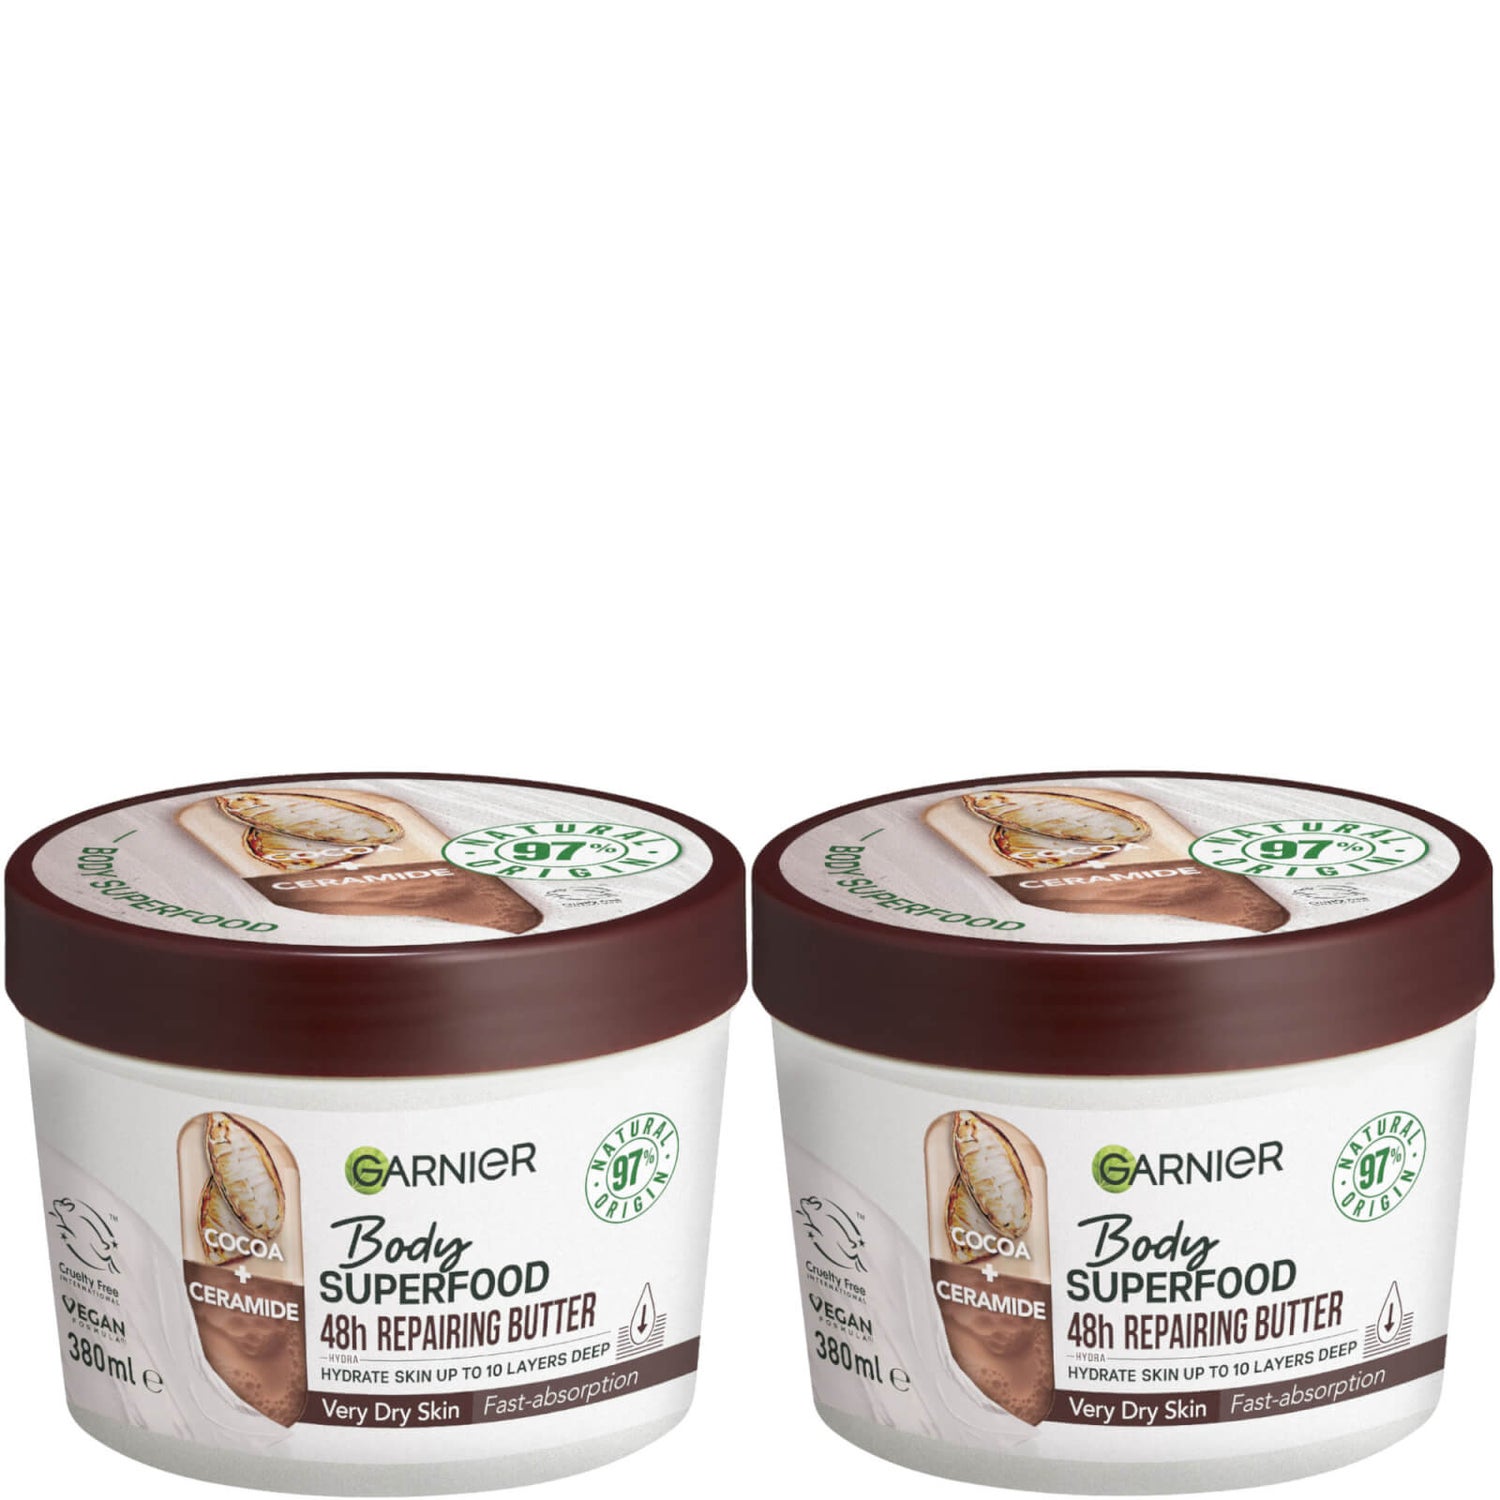 Garnier Body Superfood, Nourishing Body Cream Duos